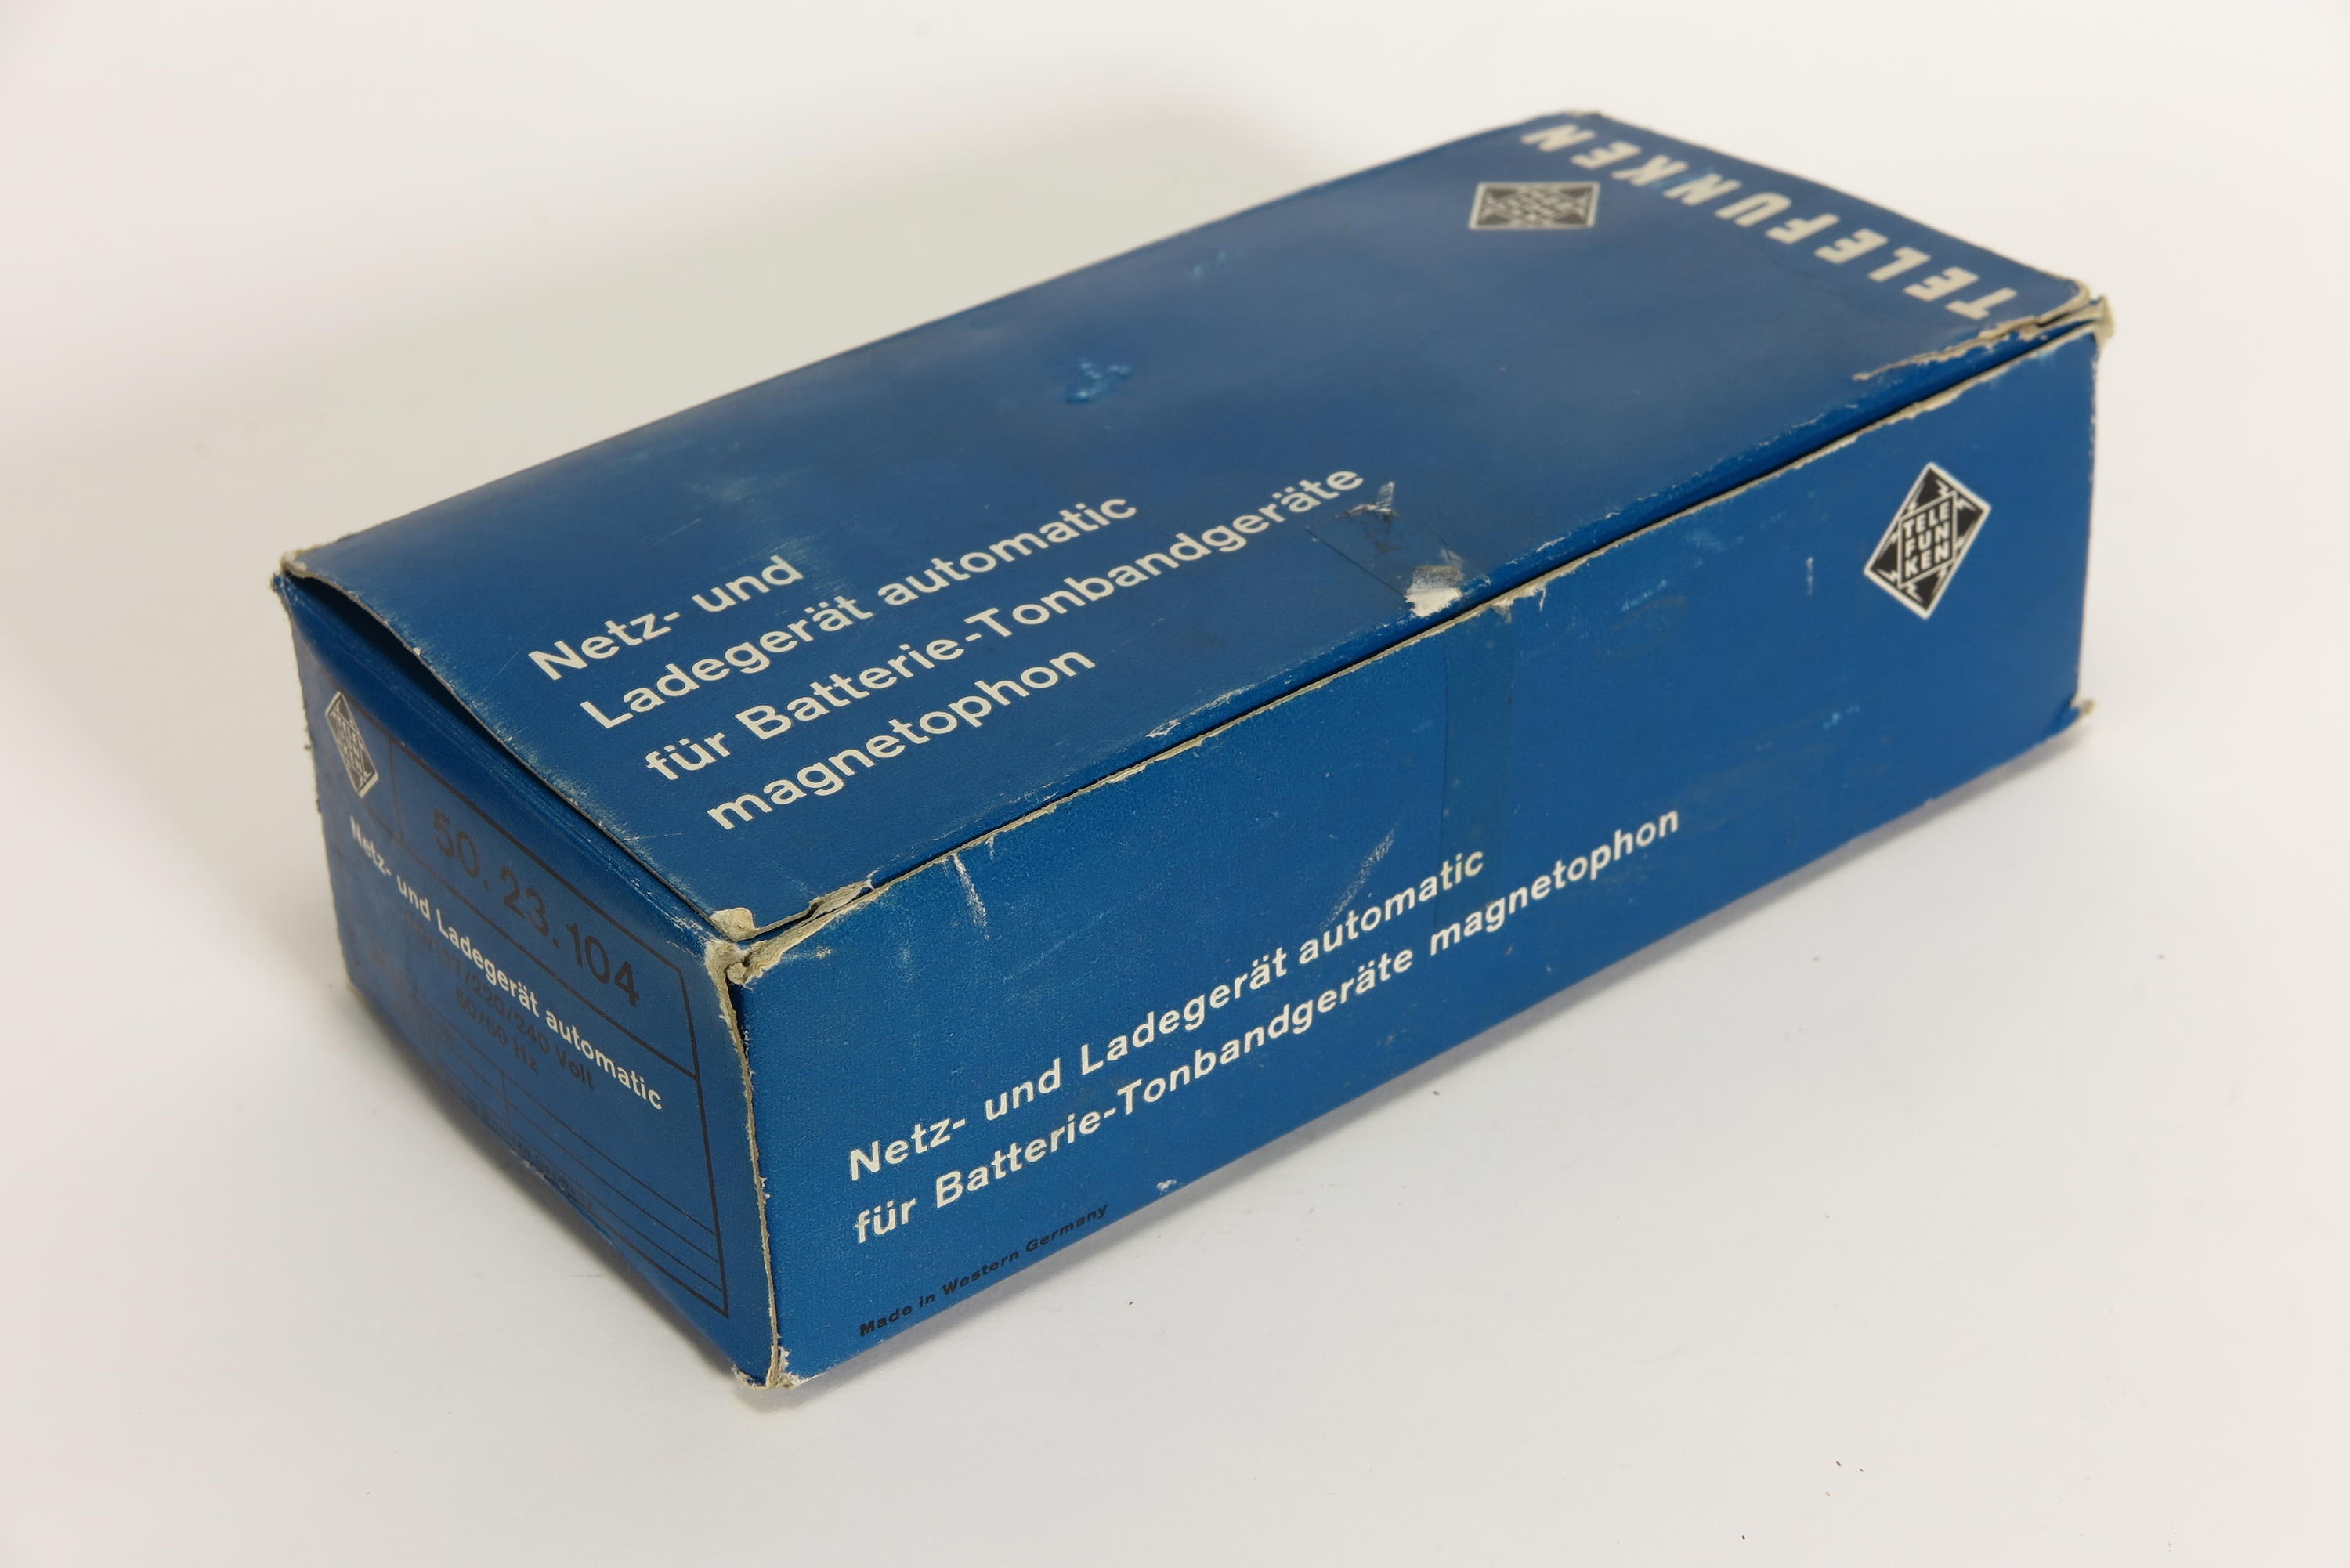 Zubehör für Netzgerät und Ladegerät Telefunken automatic, Kartonverpackung (Deutsches Technikmuseum CC BY)